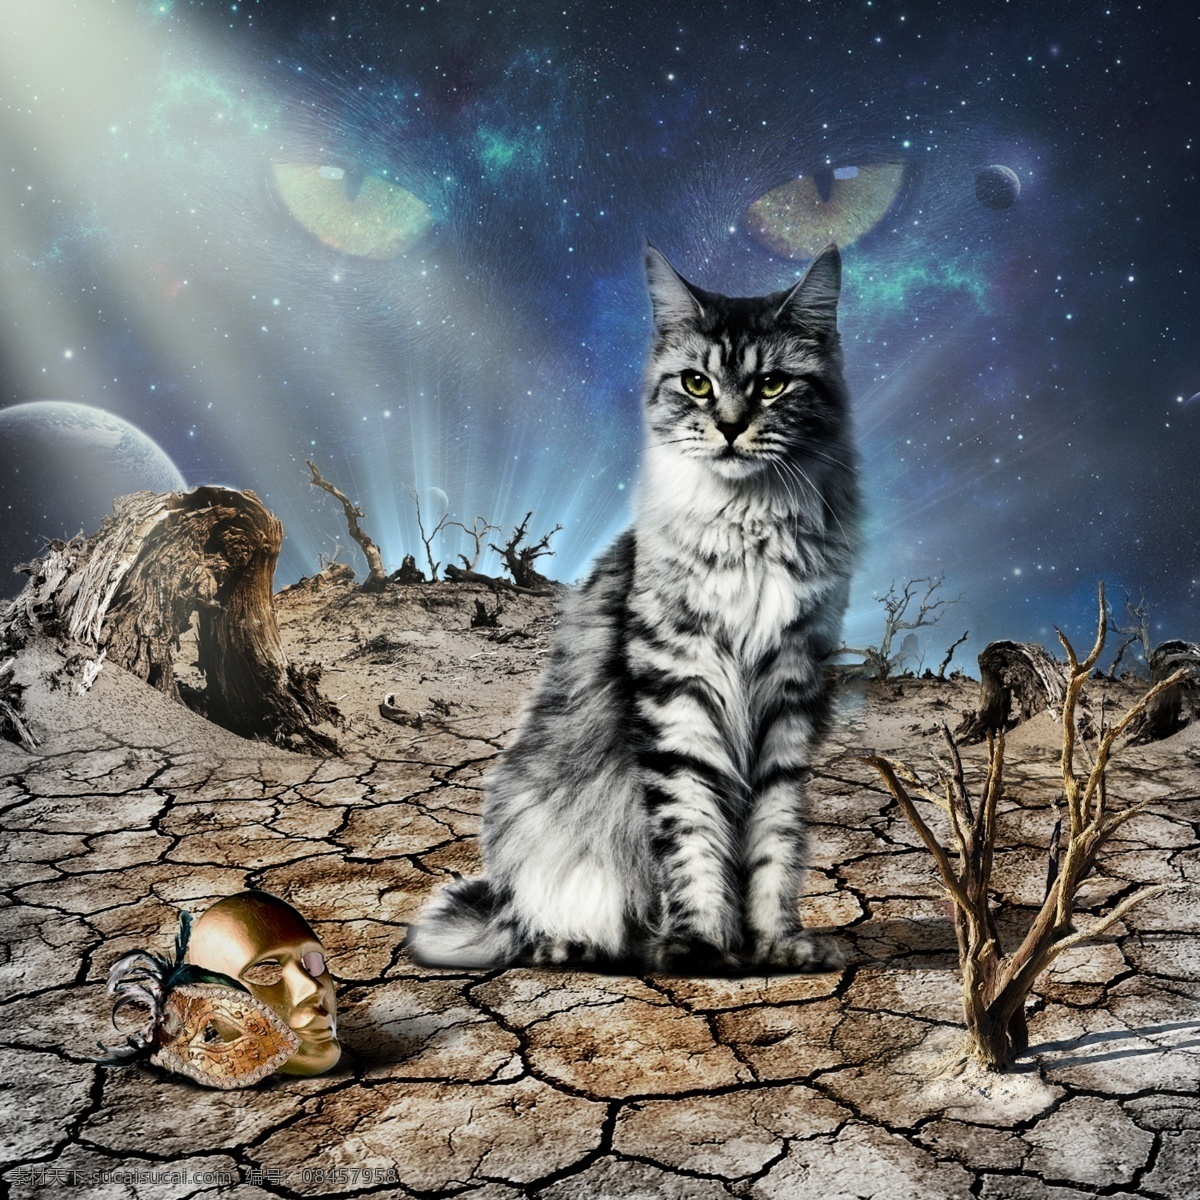 抽象 夜晚 星空 猫咪 背景 面具 猫 天空 干燥 枯树 星球 极光 眼睛 裂缝 干裂 金色 黑猫 白猫 干枯 枯 沙漠 戈壁 蓝色